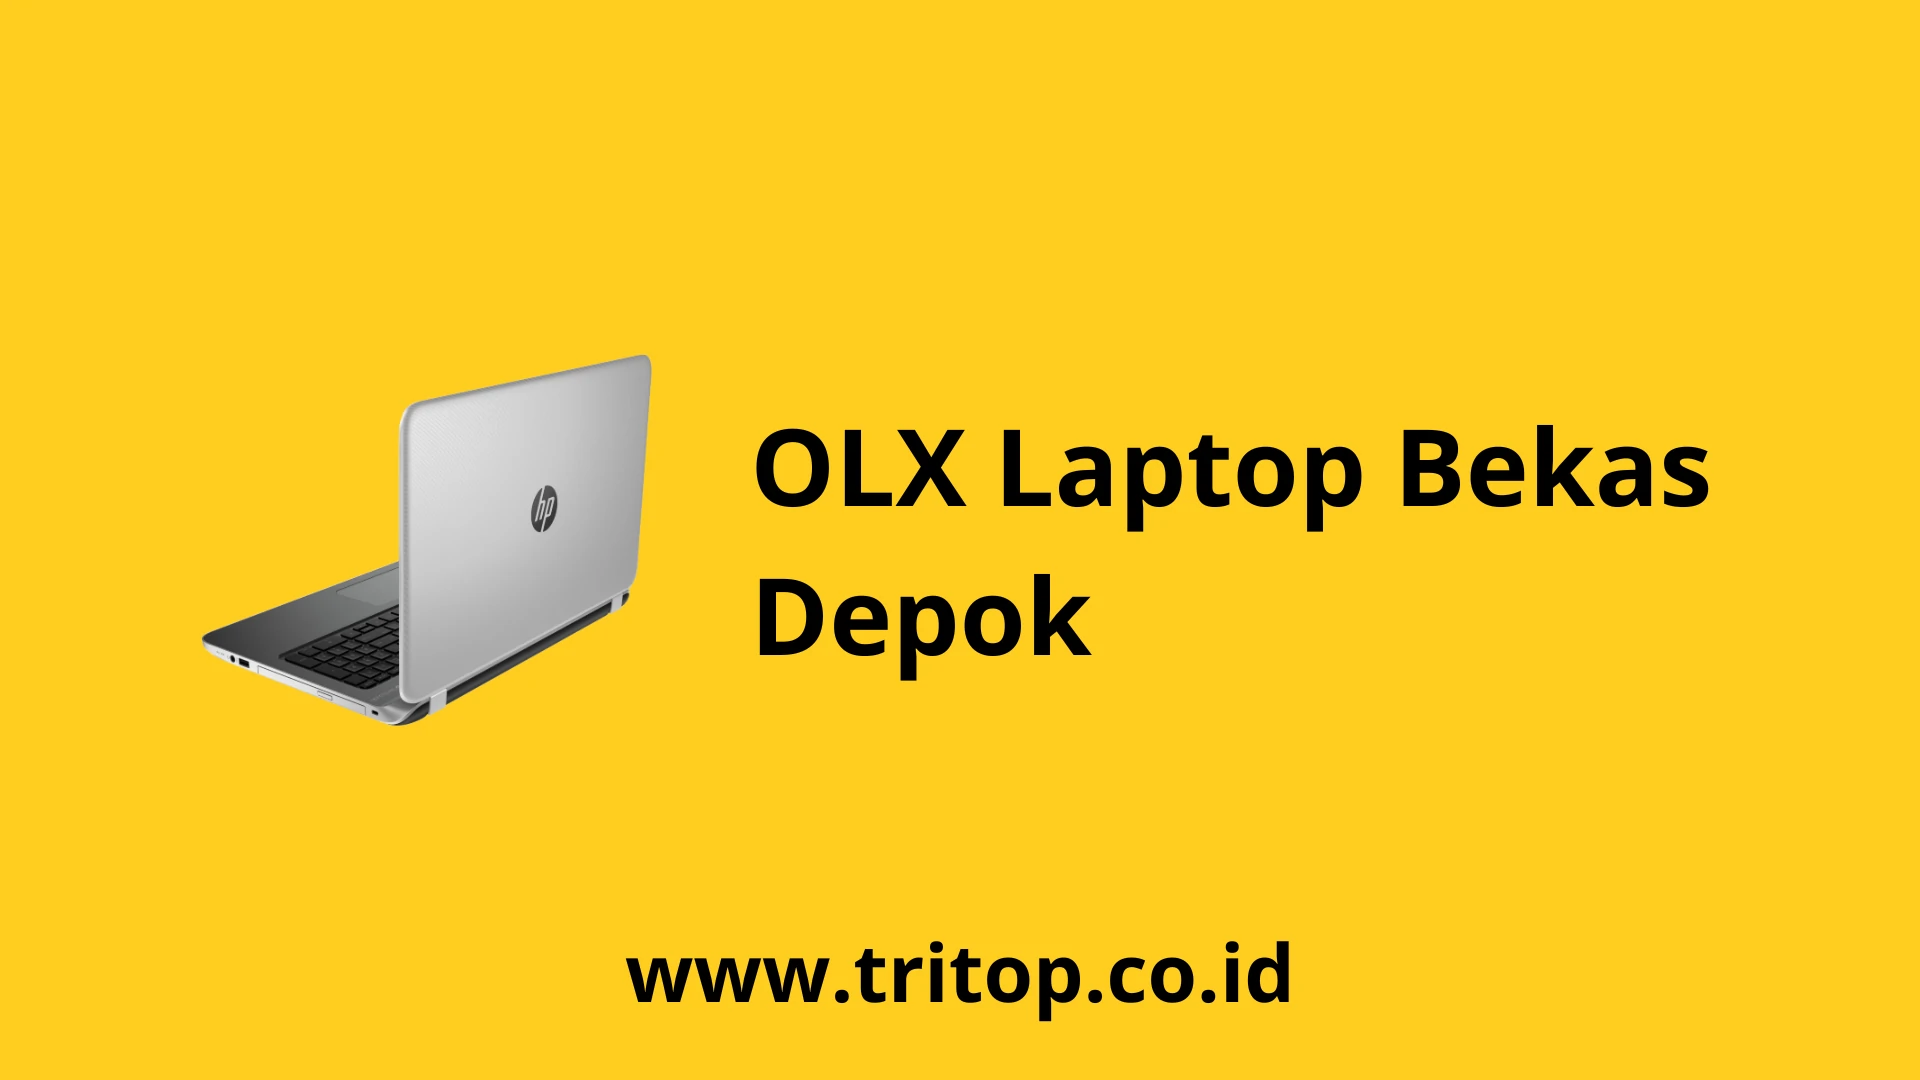 OLX Laptop Bekas Depok